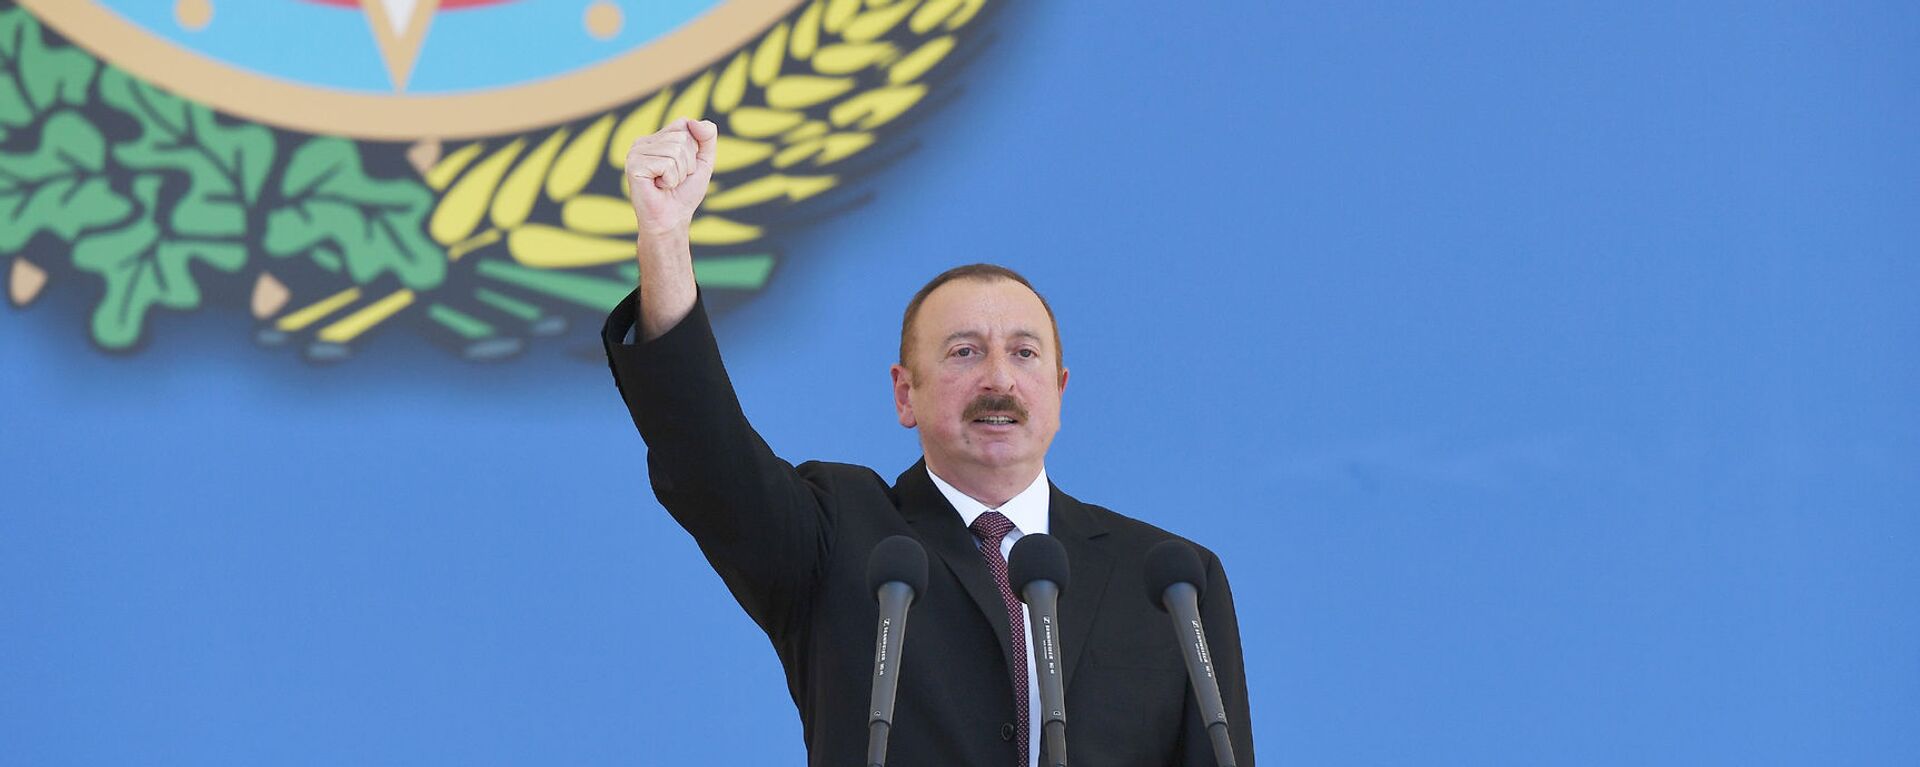 Президент Ильхам Алиев, фото из архива  - Sputnik Azərbaycan, 1920, 27.09.2021